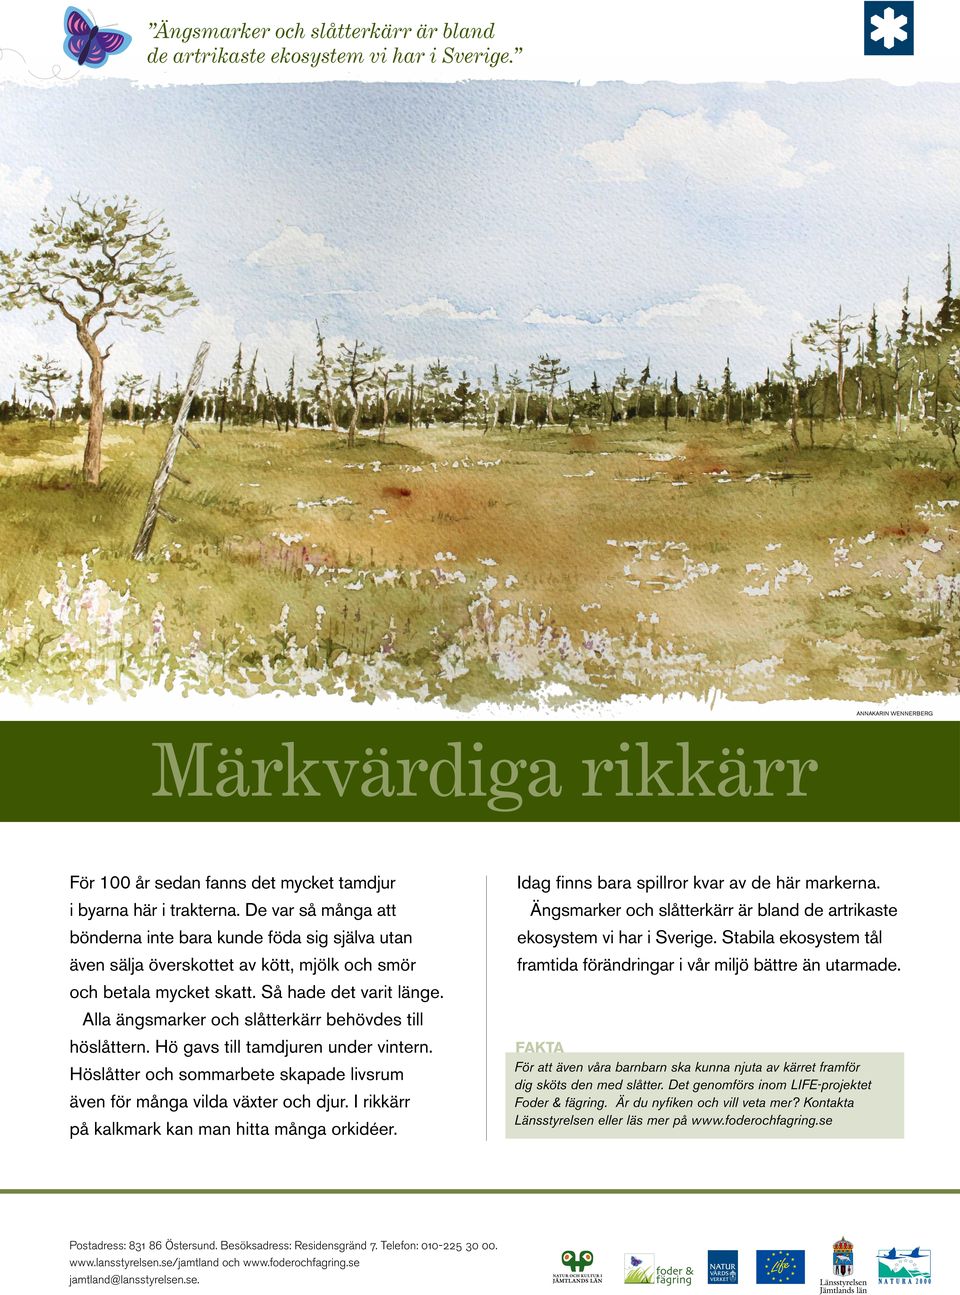 Ängsmarker och slåtterkärr är bland de artrikaste ekosystem vi har i Sverige. Stabila ekosystem tål framtida förändringar i vår miljö bättre än utarmade.